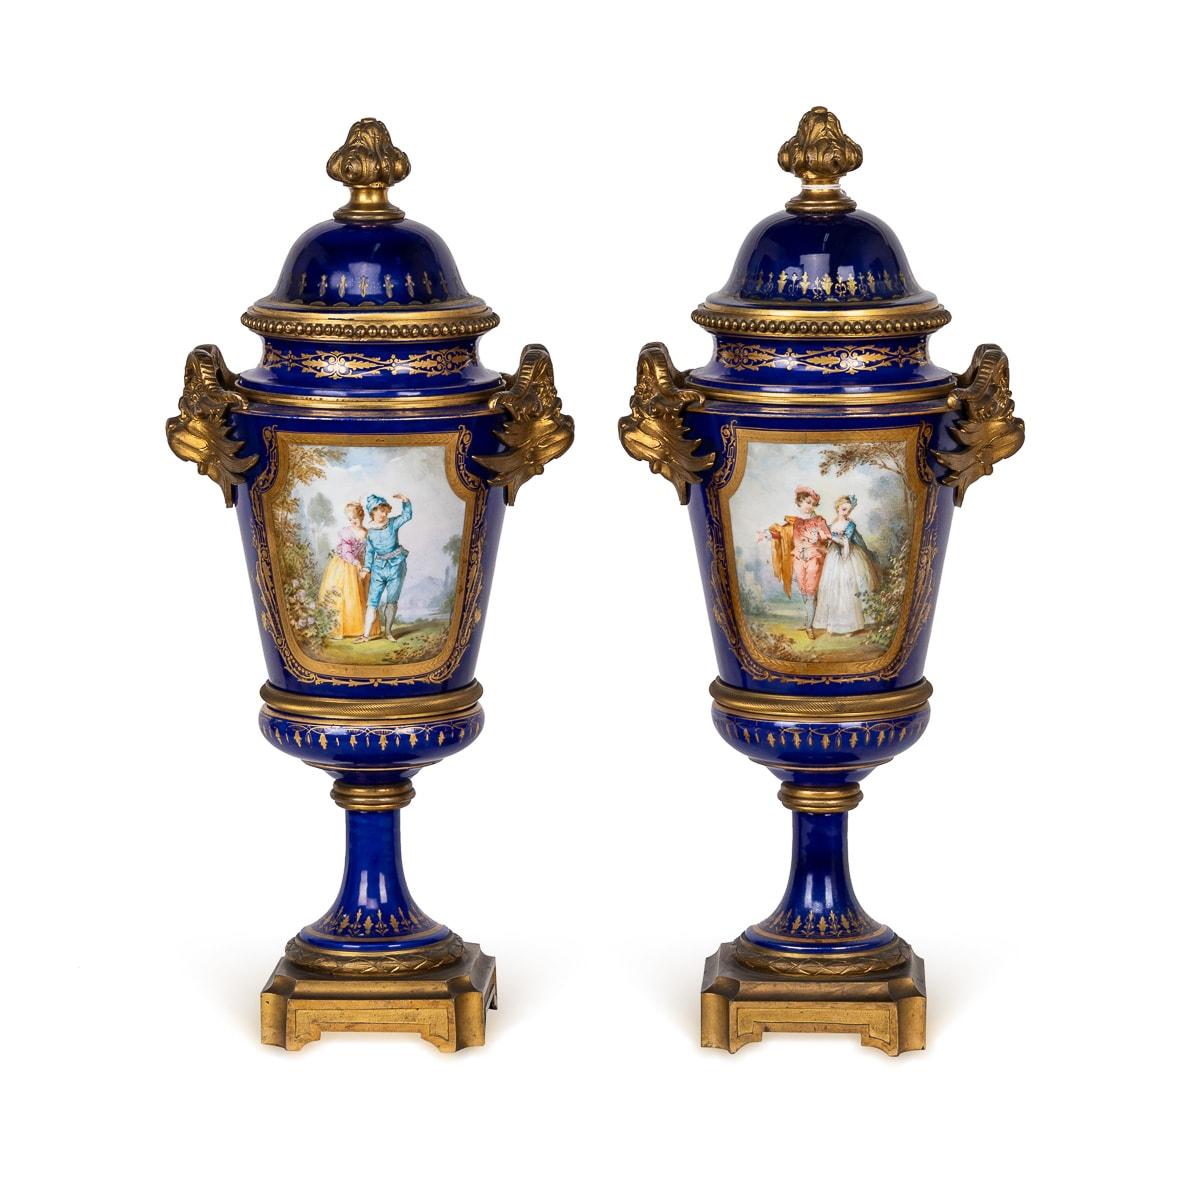 Antike französische Serres-Porzellan-Deckelvasen des 19. Jahrhunderts, die mit ihren kunstvollen Ormolu-Fassungen Eleganz ausstrahlen. Jede Vase ist mit anmutigen Akanthusblattgriffen verziert und hat einen Deckel, der von einer Blumenzwiebel